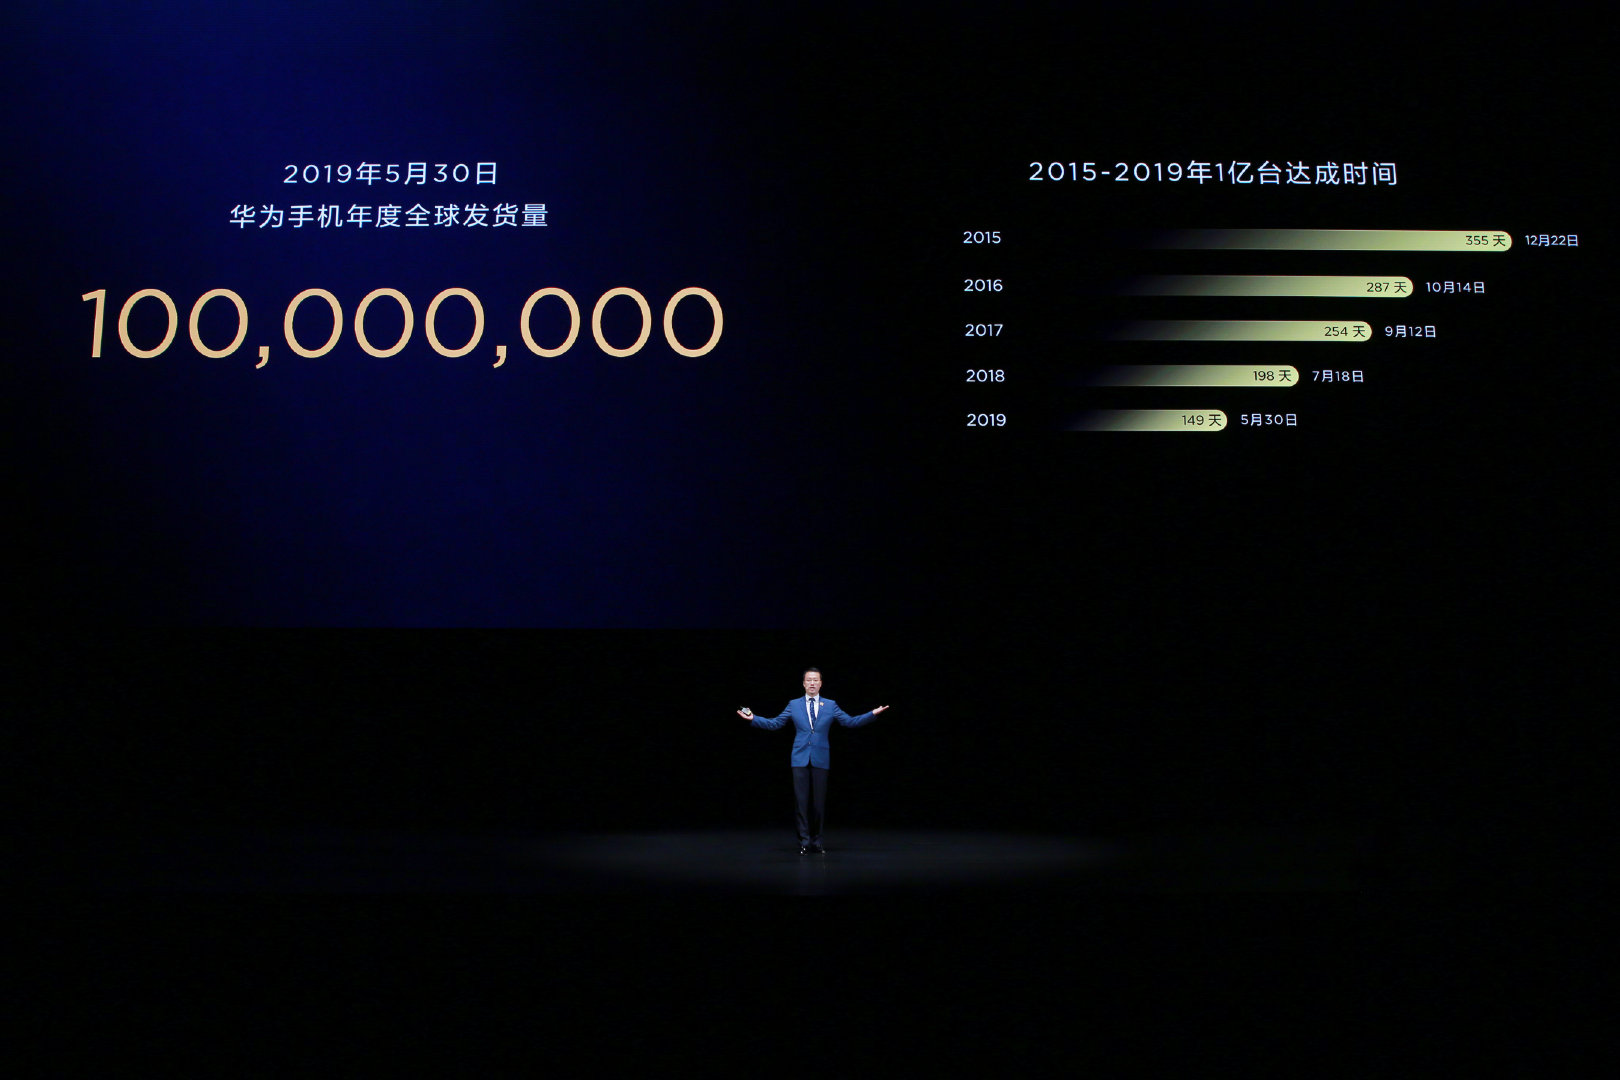 قامت-Huawei-بشحن-أكثر-من-100-مليون-هاتف-ذكي-في-الخمسة-أشهر-الماضية